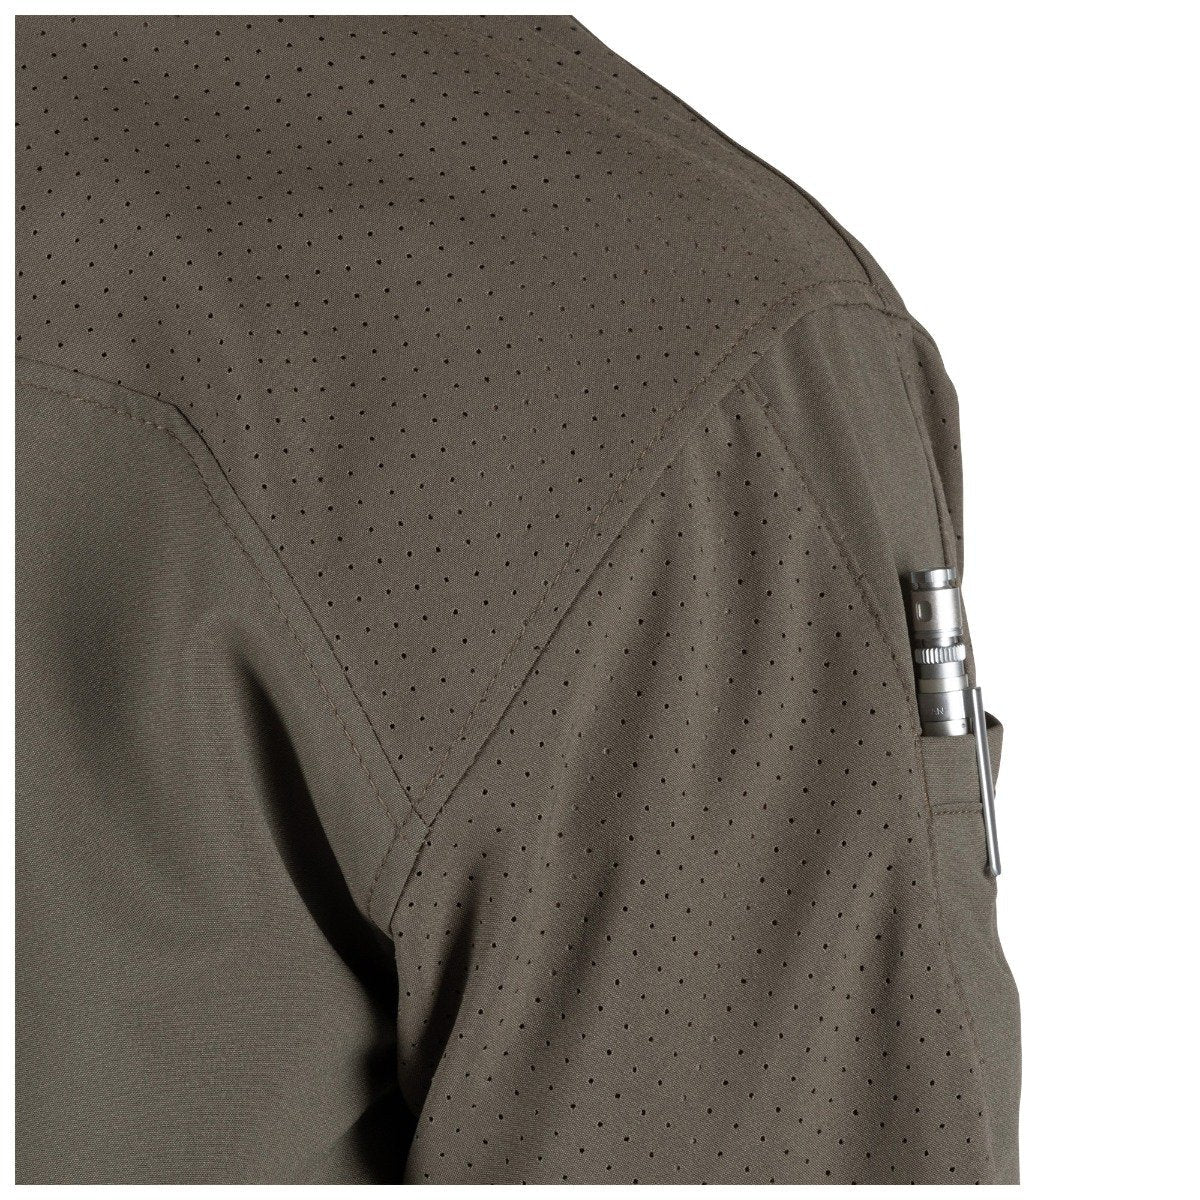 5.11 Tactical Freedom Flex Woven Short Sleeve Shirt Peacoat Shirts 5.11 Tactical Tactical Gear Supplier Tactical Distributors Australia